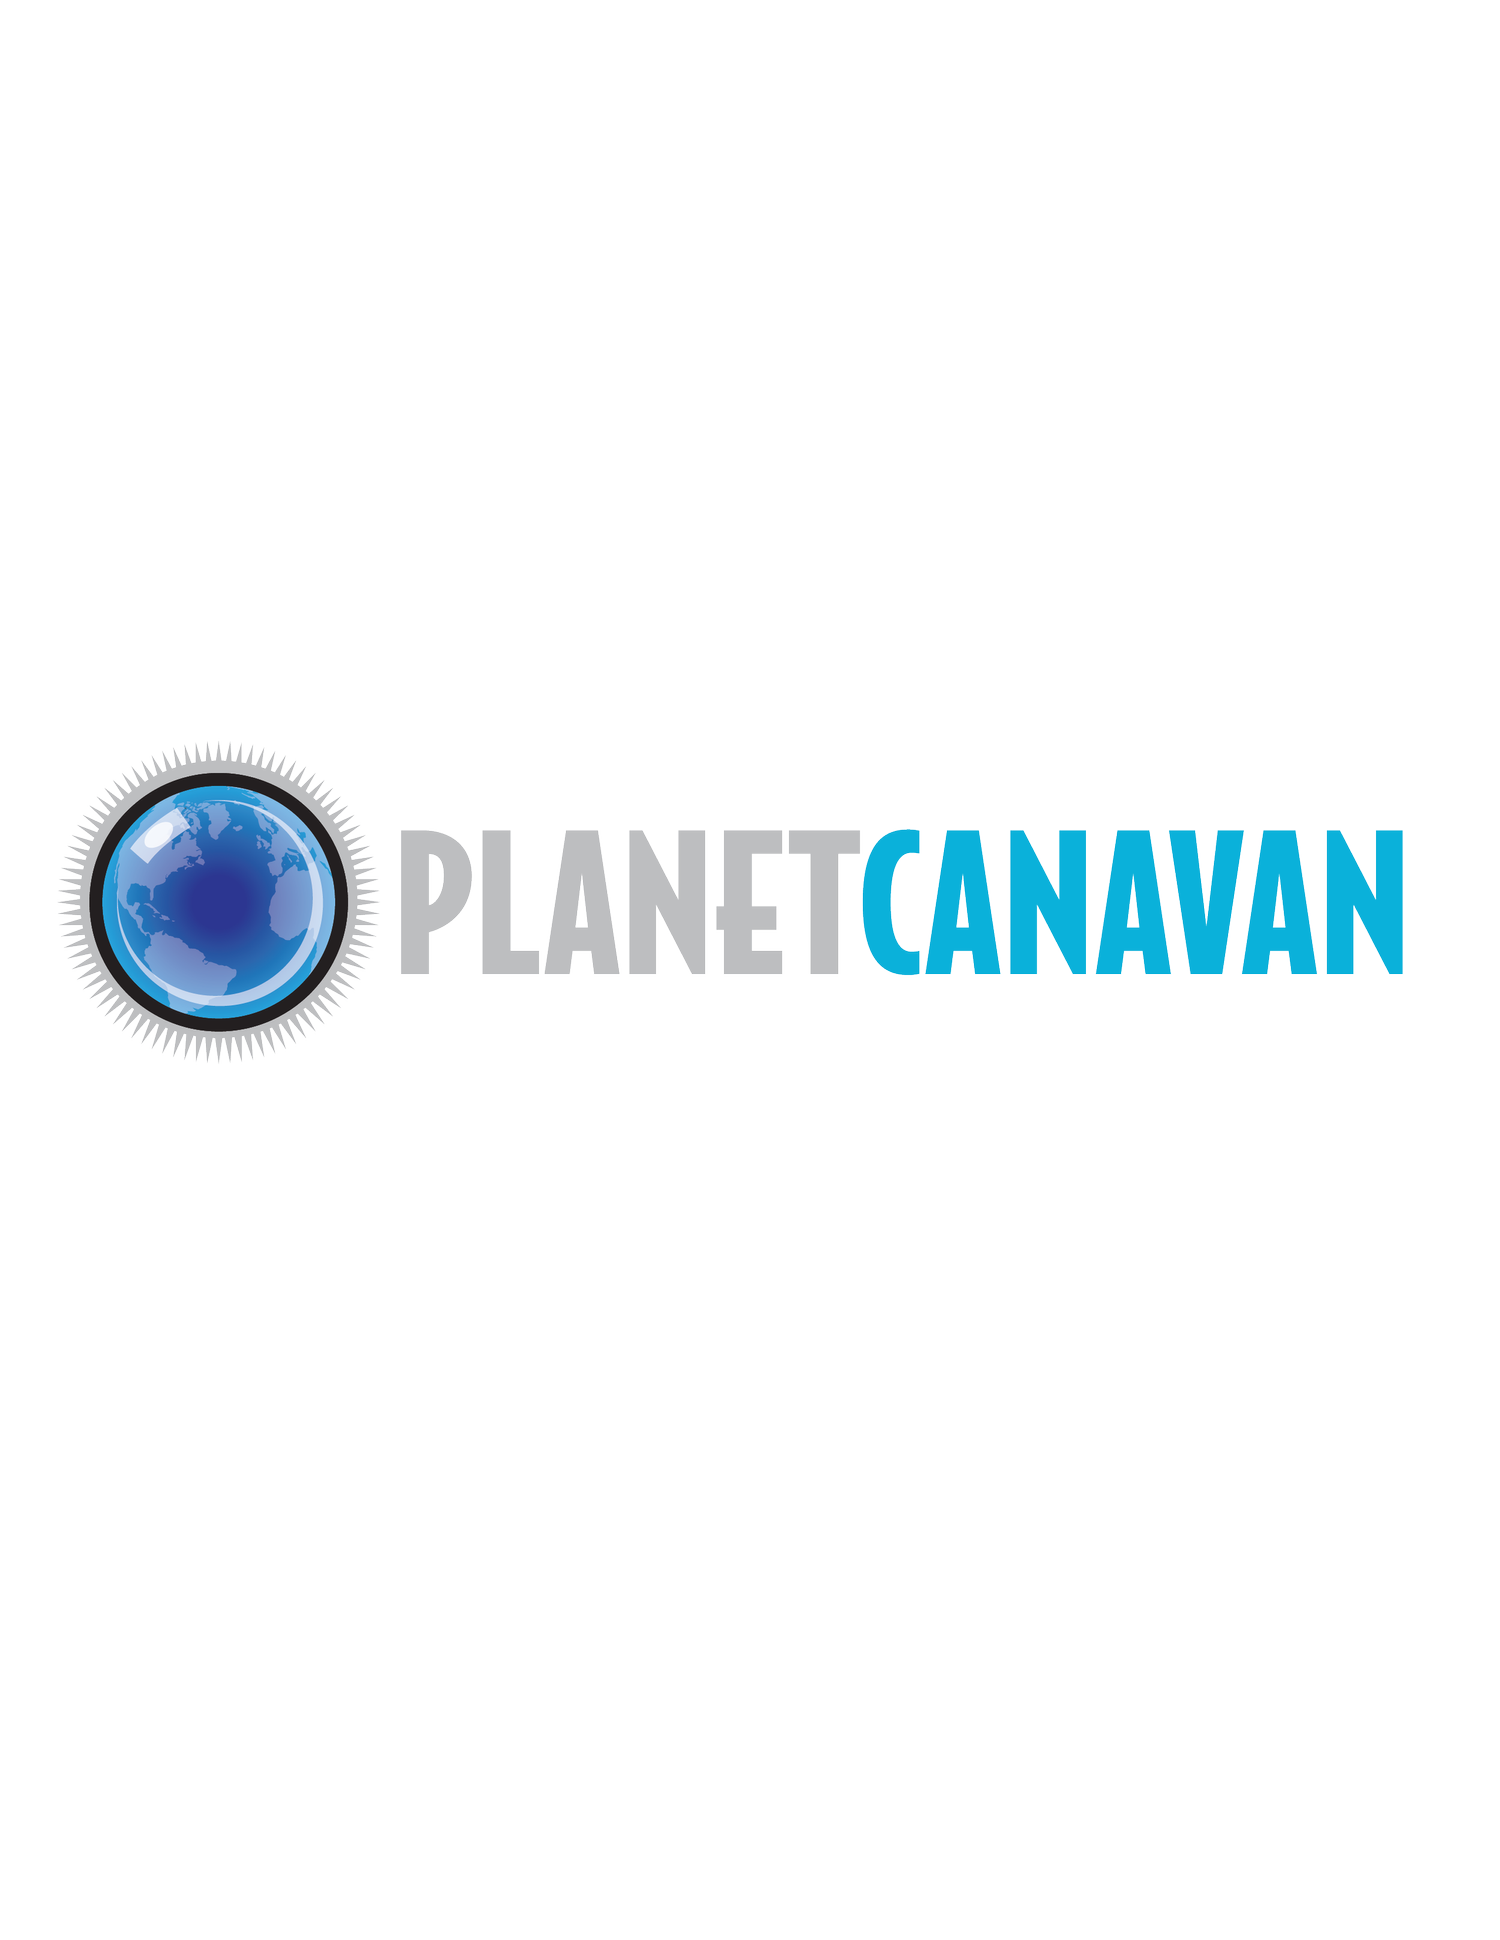 Planet Canavan